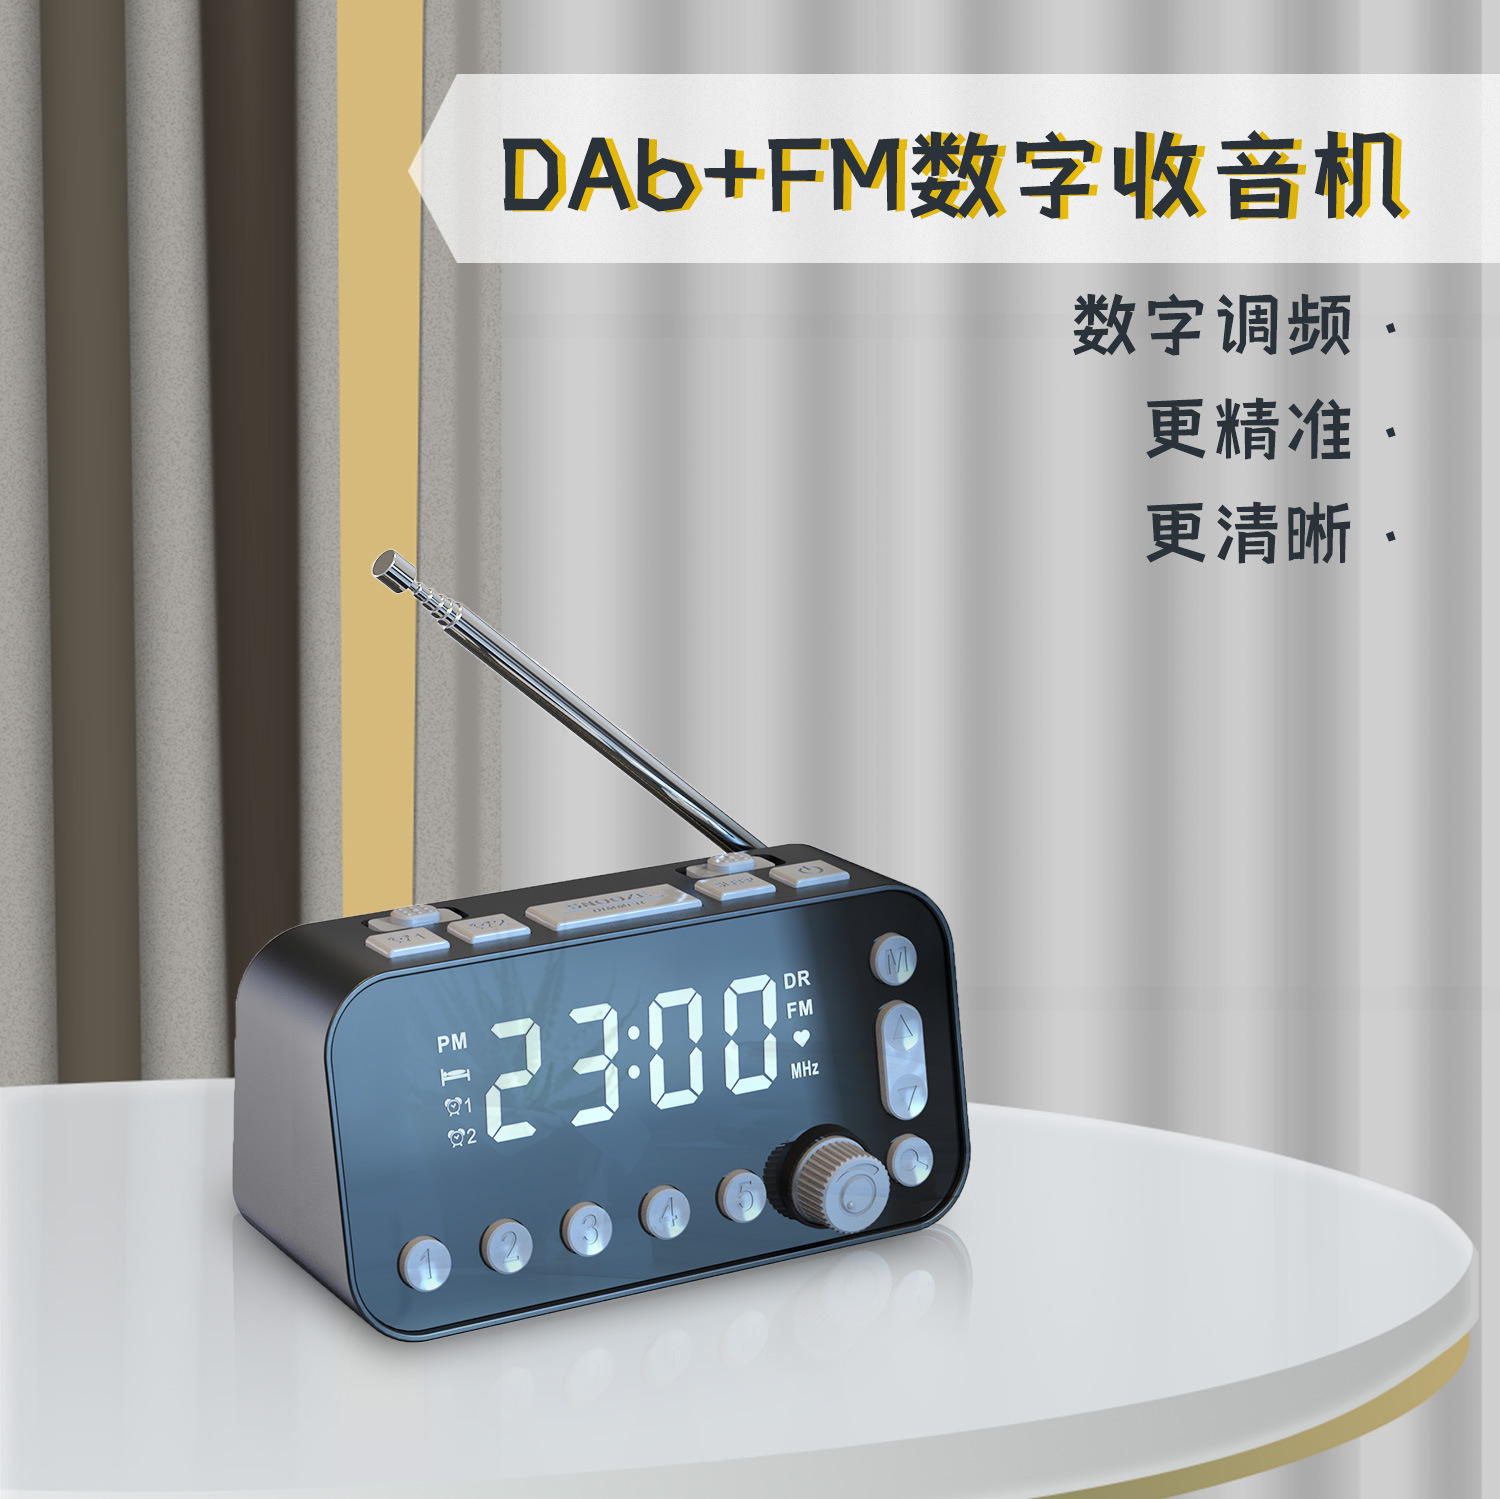 新款 电子时钟闹钟DAB+收音机播放器 镜面双闹钟时钟FM收音机音箱